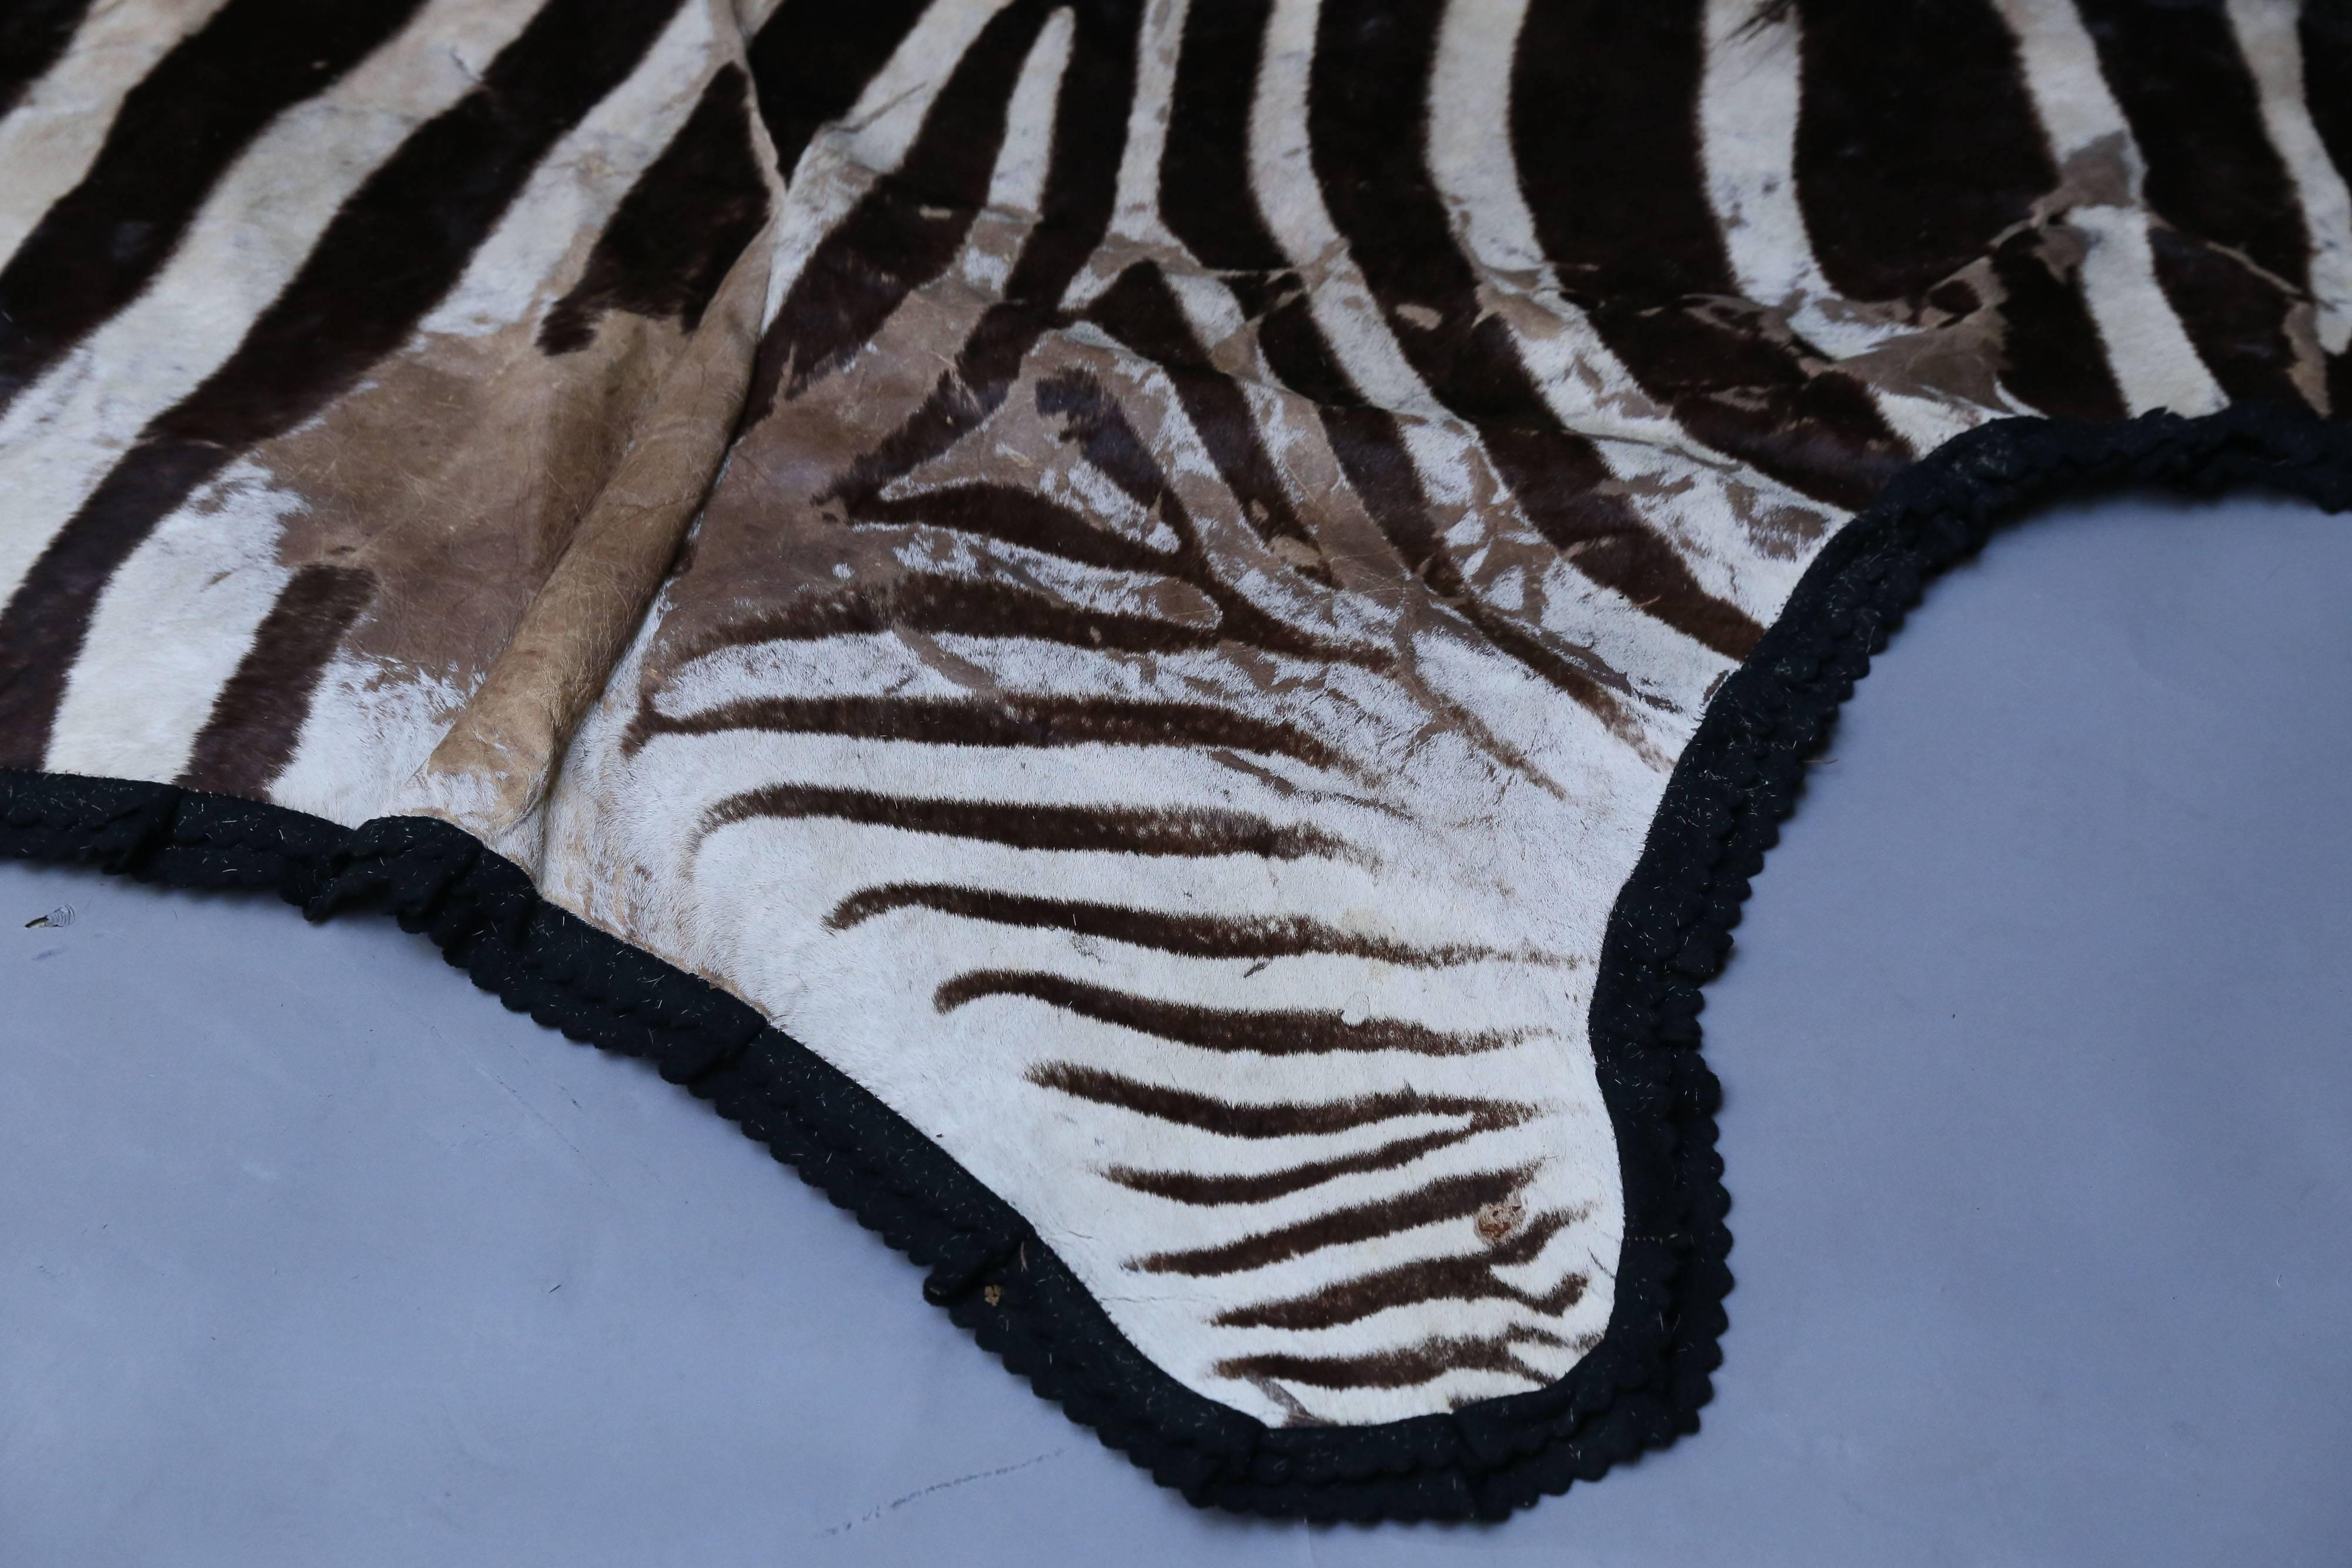 Zebra hide rug has black felt backing.